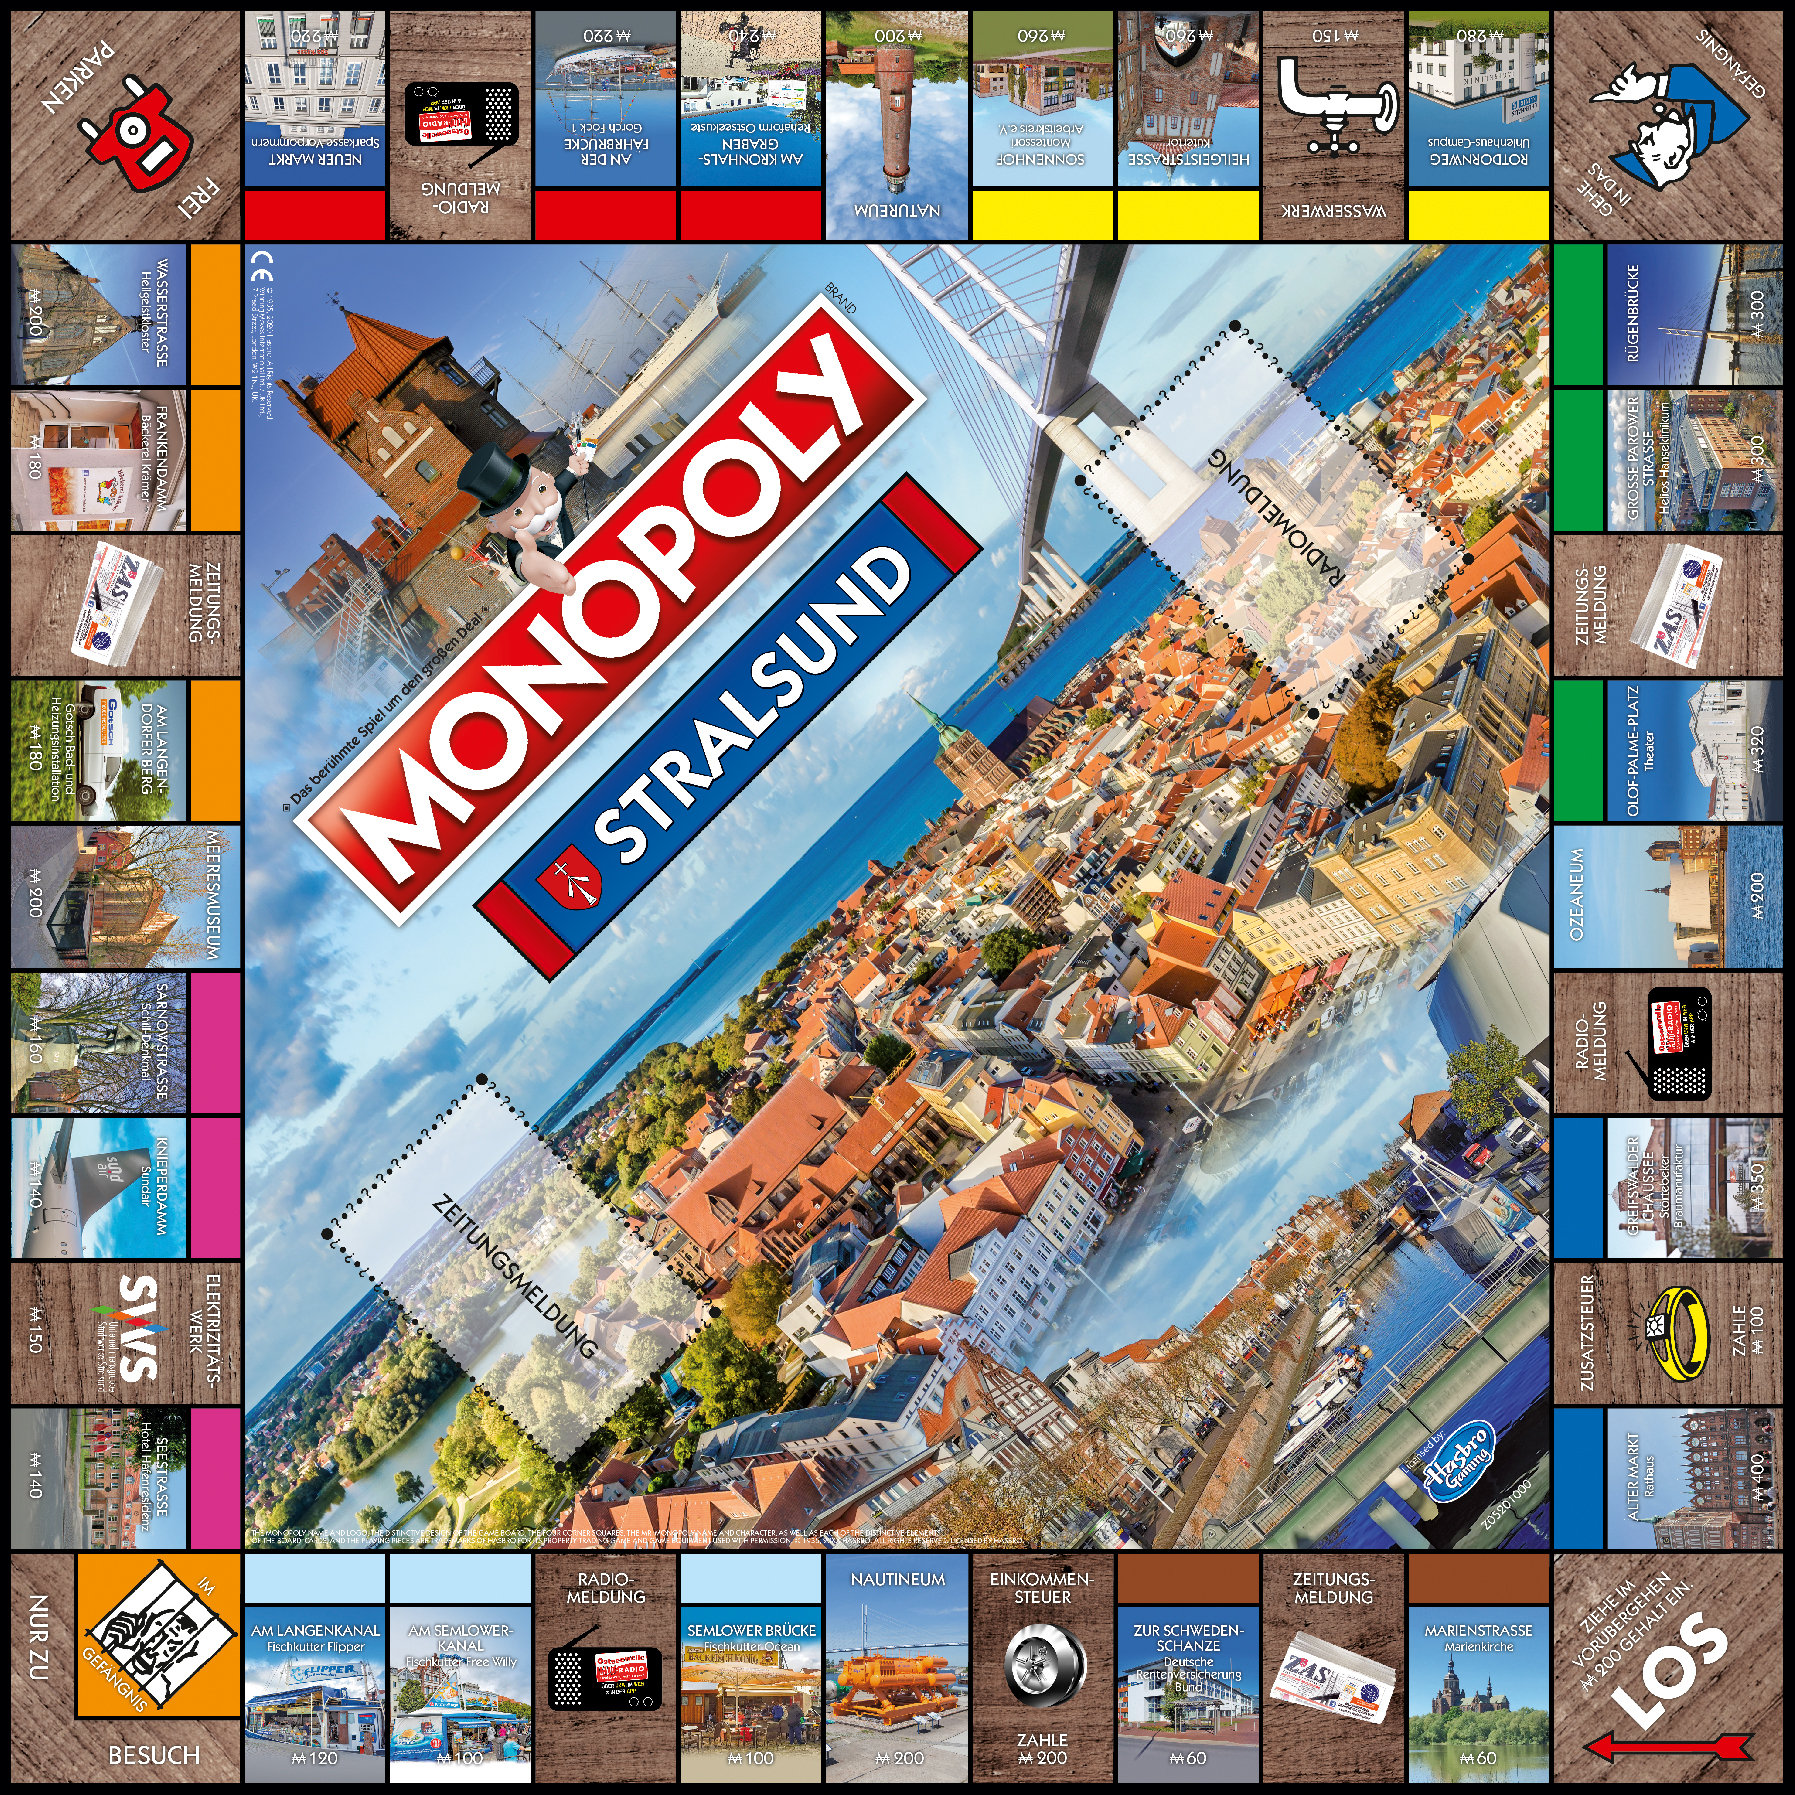 Monopoly Stralsund